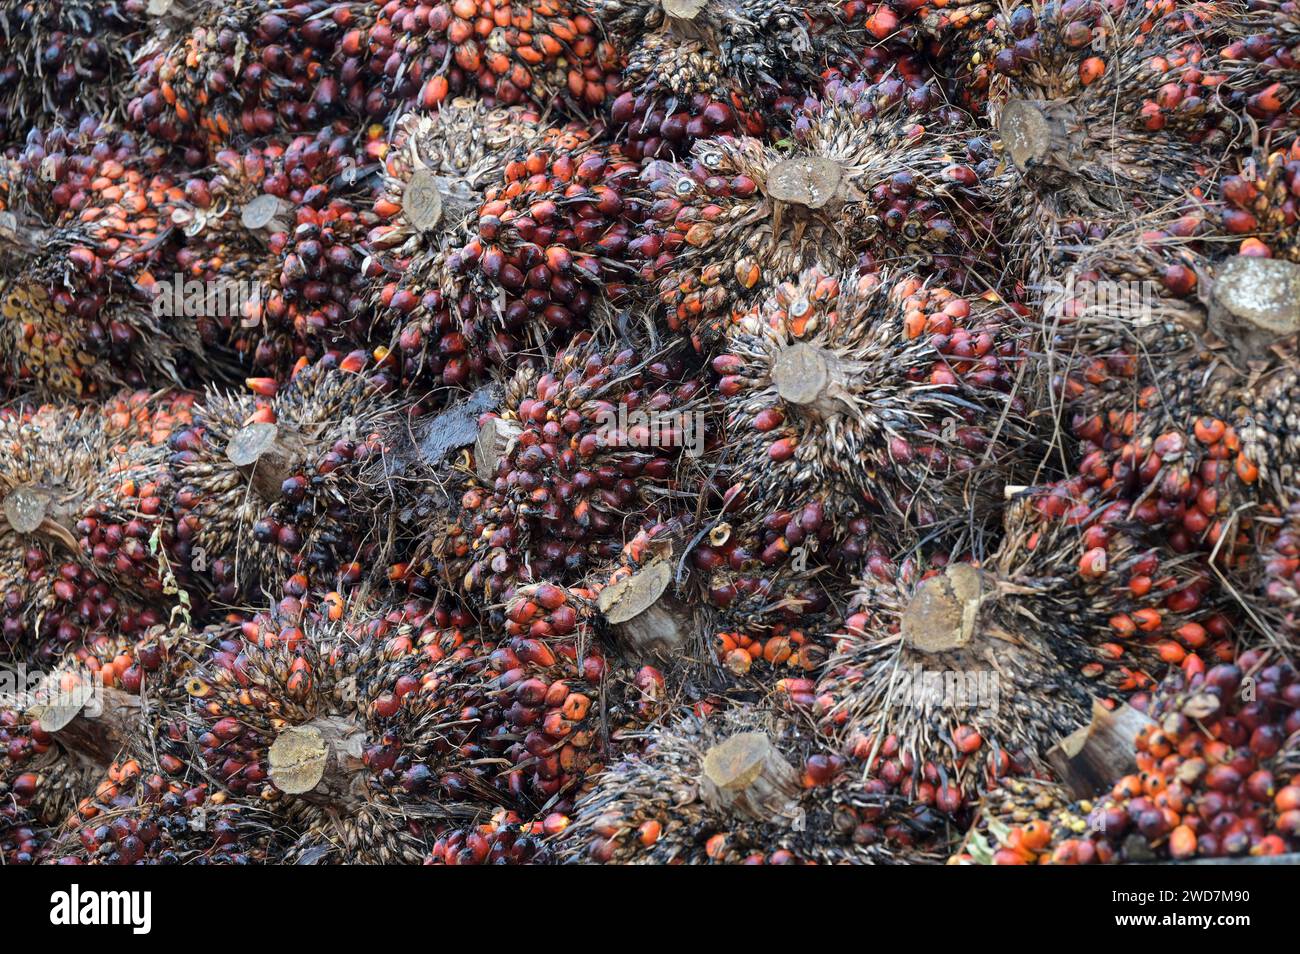 GHANA, Kwae, GOPDC, ein Mitglied der belgischen SIAT-Gruppe, ist ein integriertes agroindustrielles Unternehmen, das auf den Anbau von Ölpalmen, die Gewinnung von Rohpalmöl und Palmkernöl, die Palmöl-Mühle, die Lieferung von geernteten Palmöl-Früchten spezialisiert ist / GHANA, Kwae, GOPDC, Ölpalmen Plantage und Palmöl Mühle, Anlieferung geernteter Palmöl Früchte zur Verabeitung zu Speiseöl Stockfoto